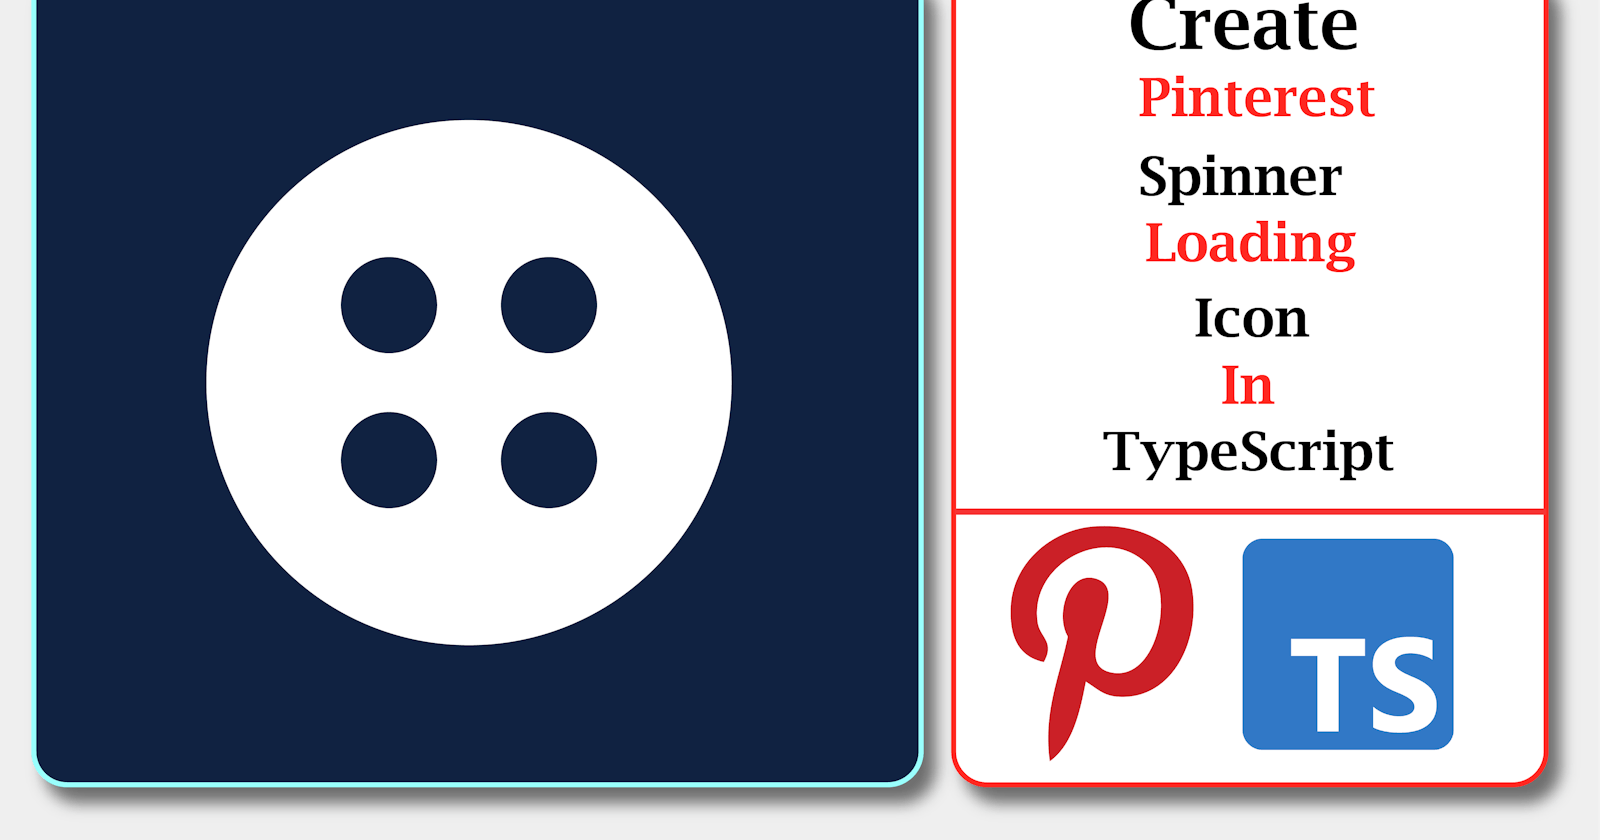 Create Pinterest Loading Spinner In TypeScript